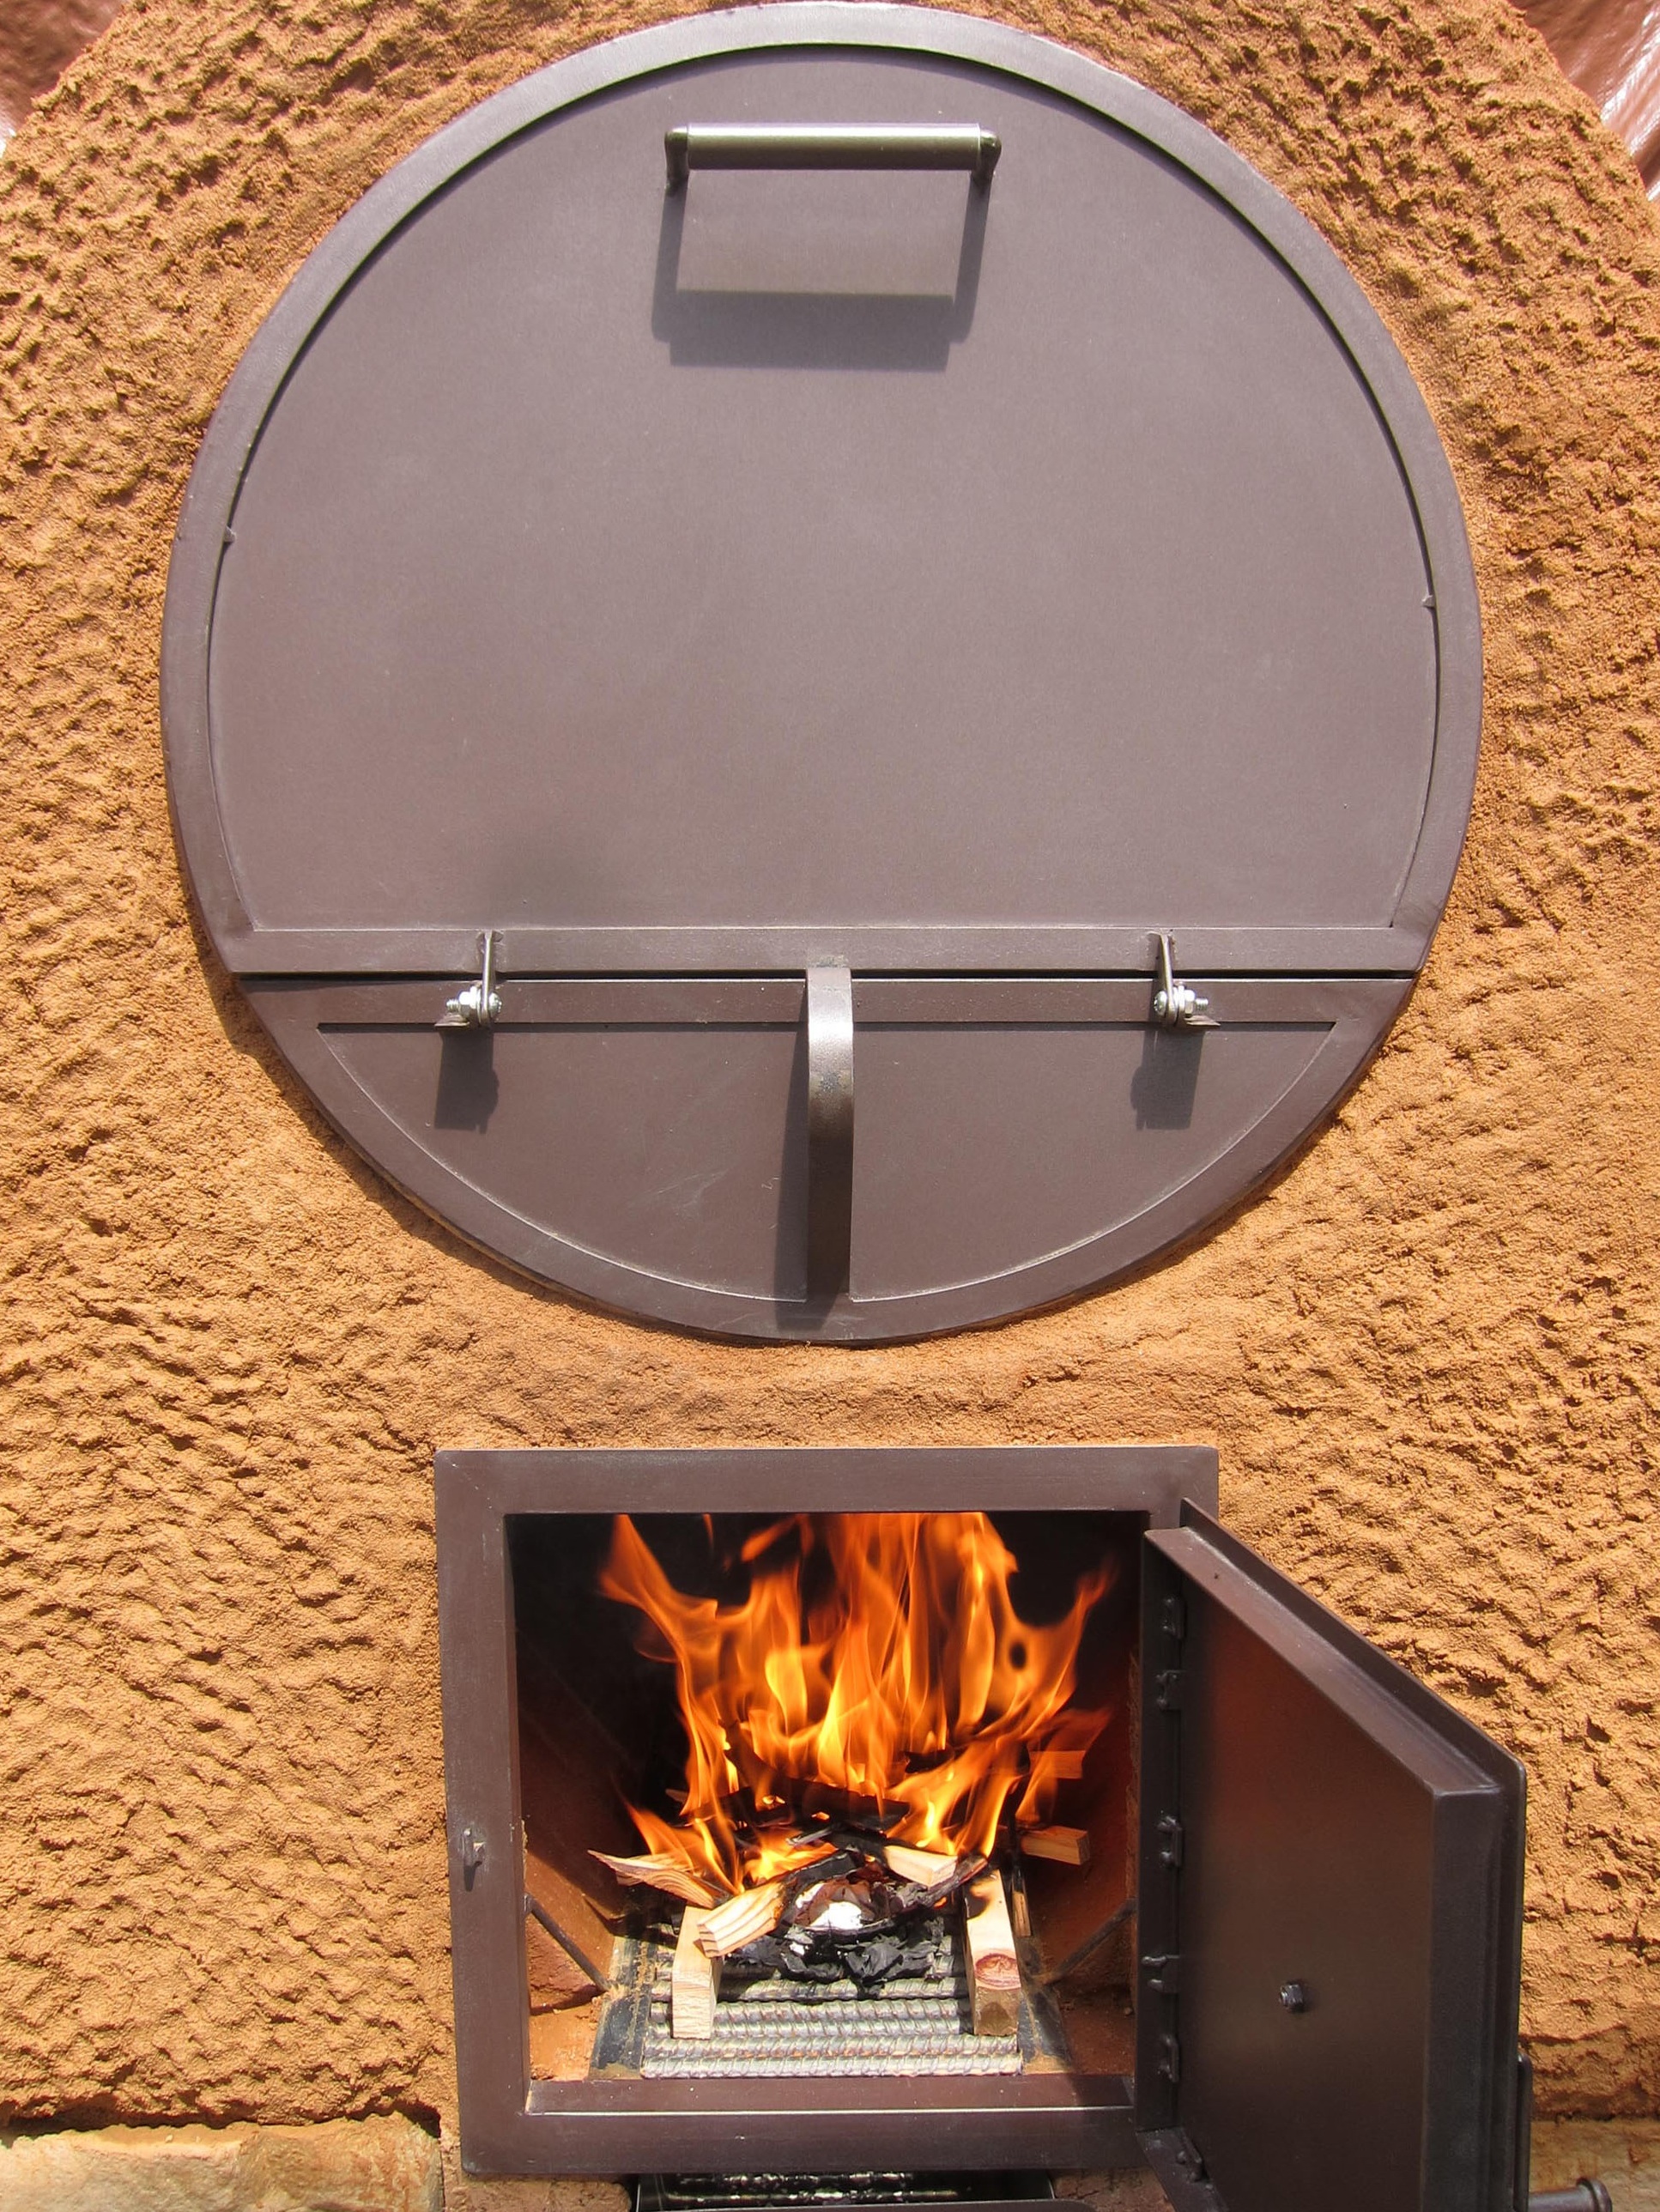 http://www.handprintpress.com/wp-content/uploads/2012/11/barrel-oven-see-the-fire.jpg